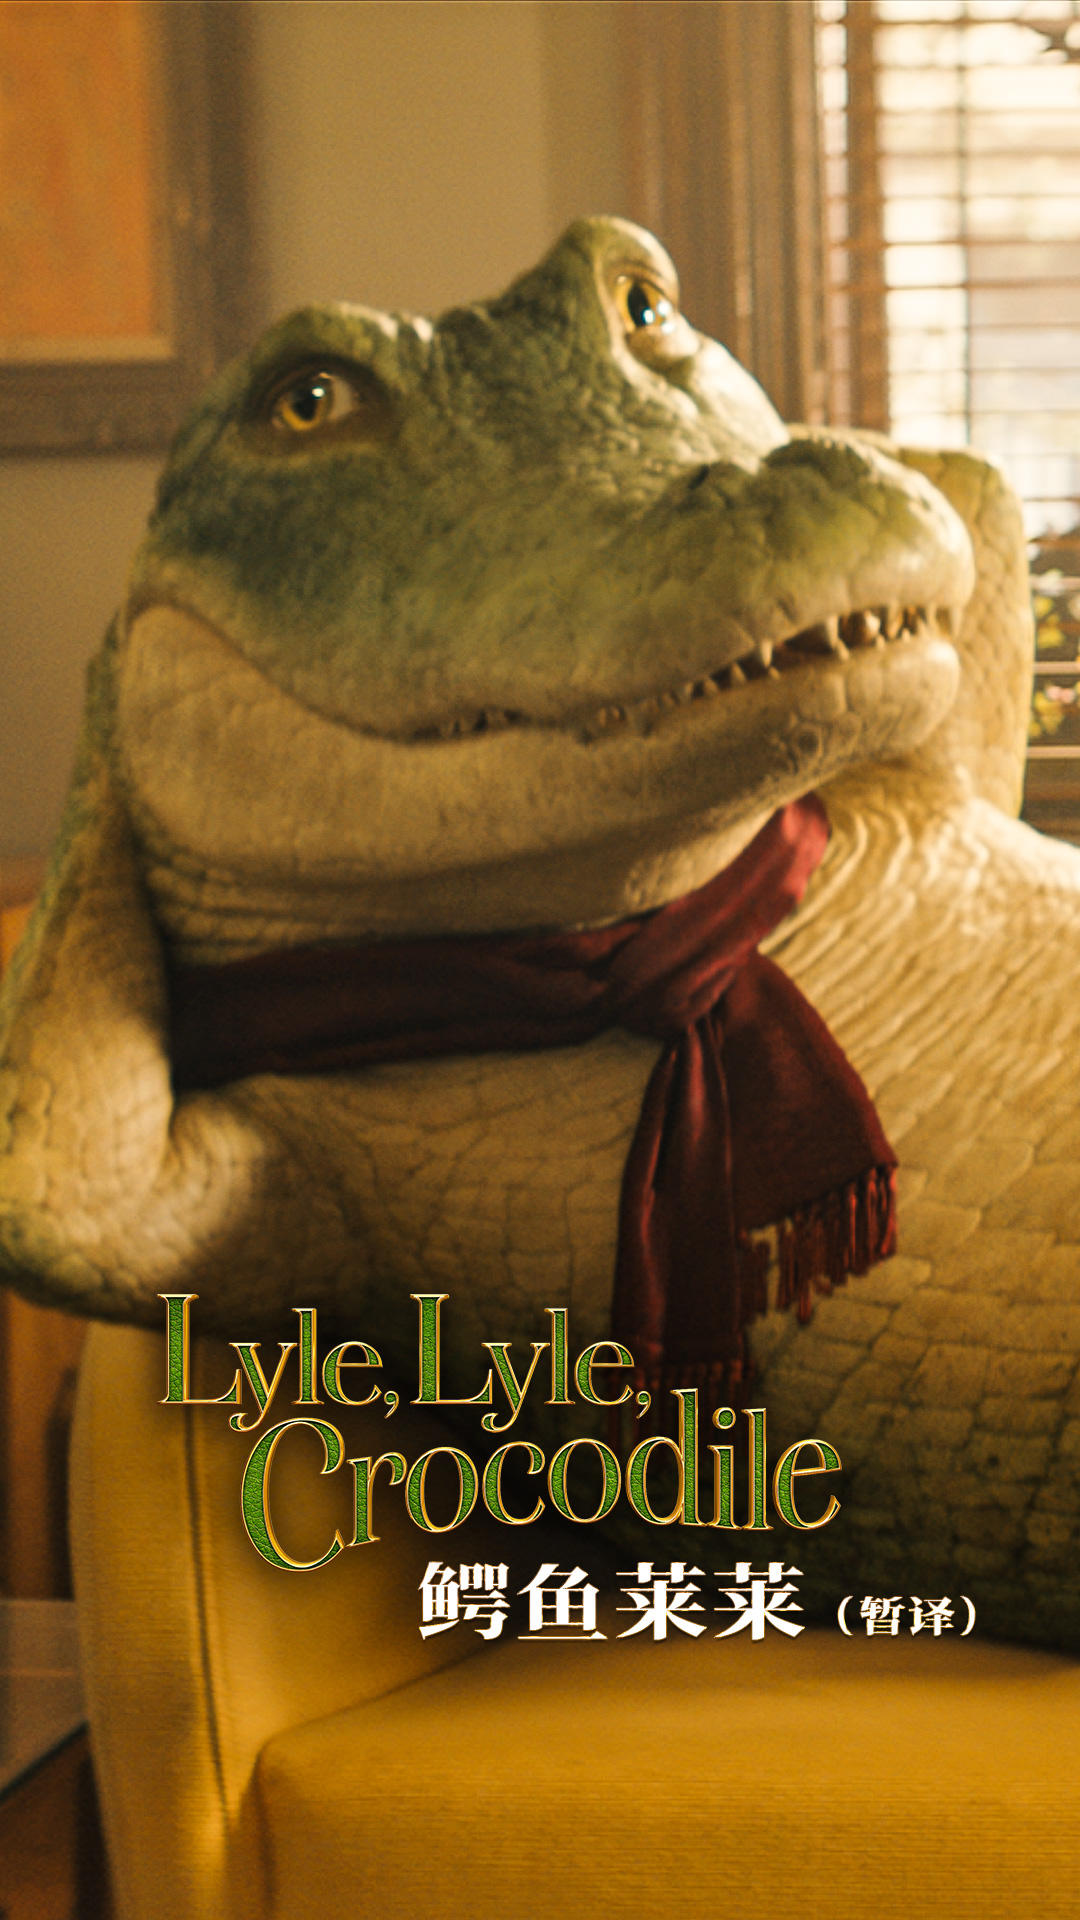 鳄鱼莱莱 Lyle, Lyle, Crocodile